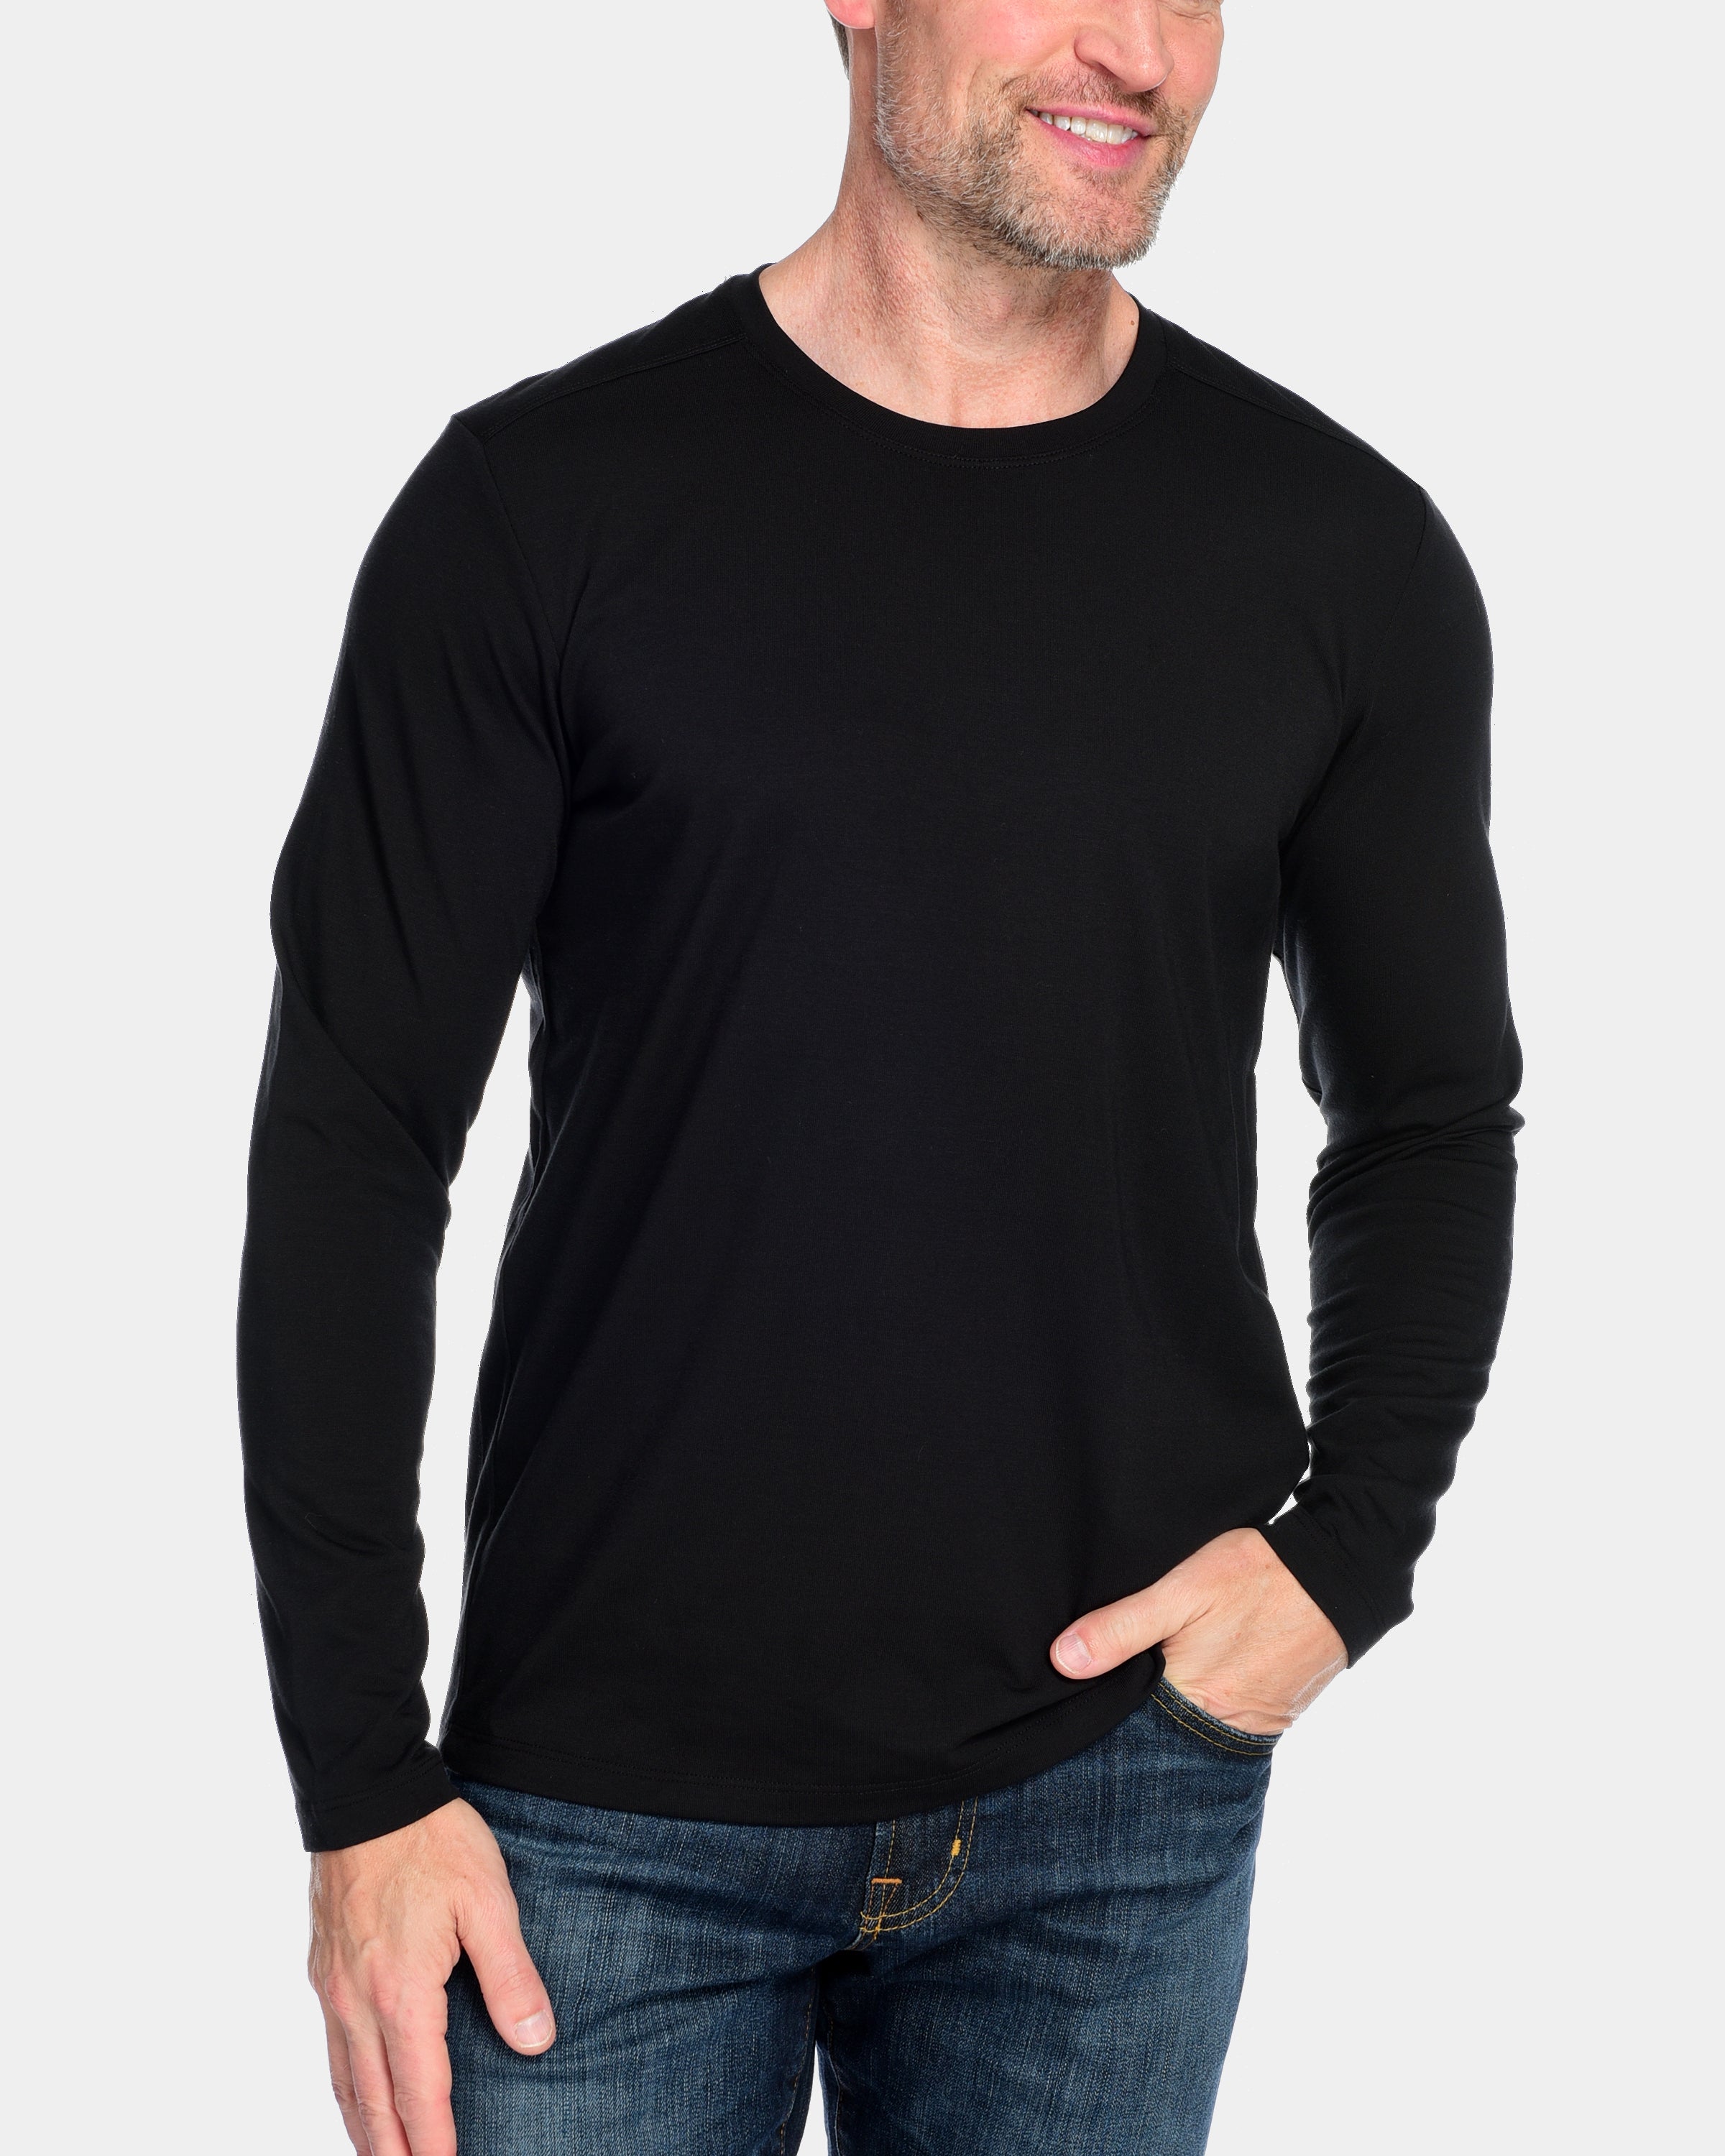 Full Sleeve T-Shirt For Men